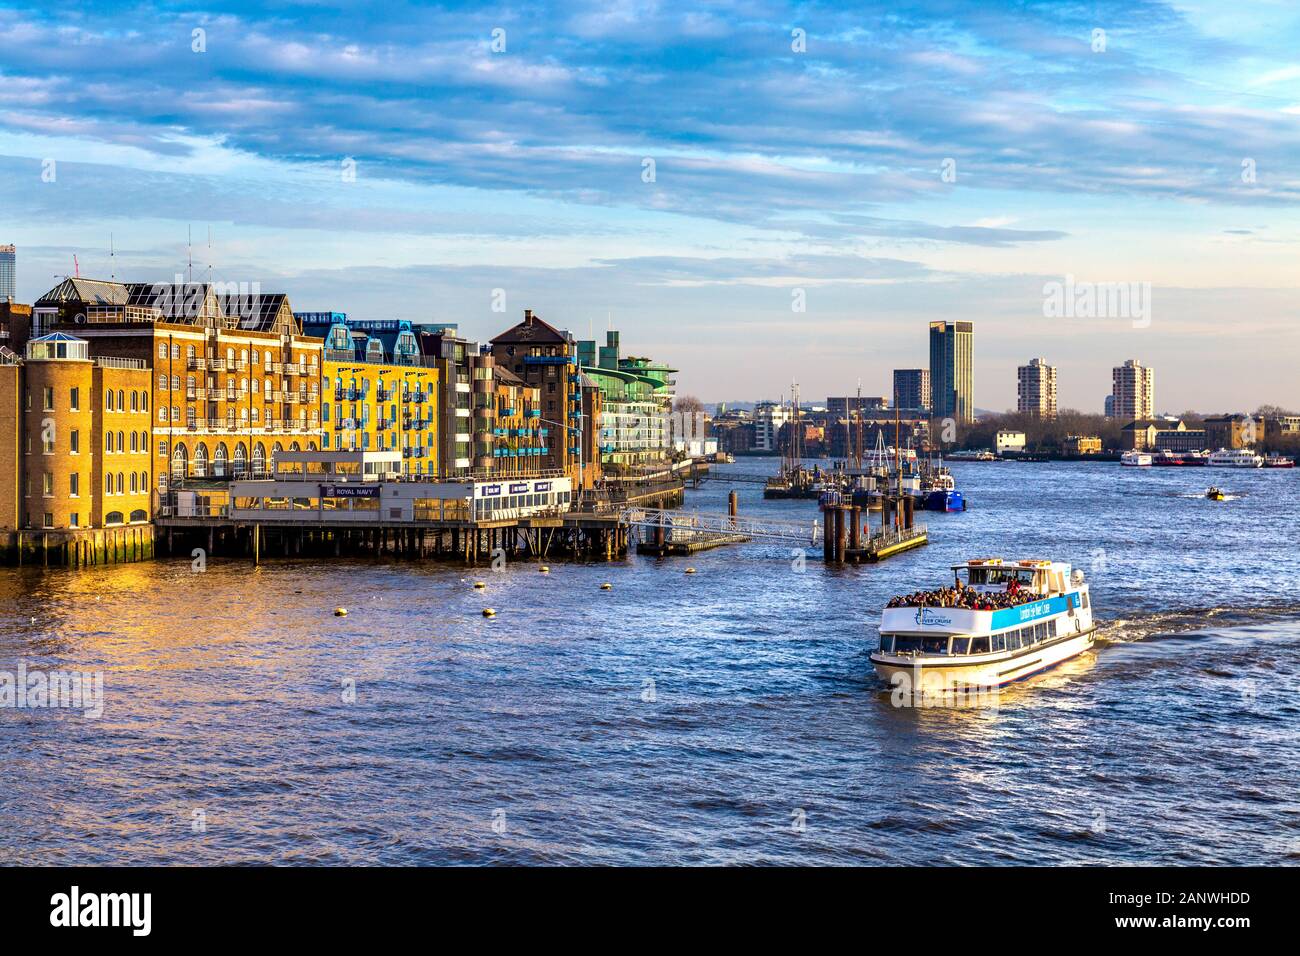 Am Ufer der Themse, von der Tower Bridge aus gesehen, mit Blick nach Osten in Richtung St Katherine's and Wapping, London Eye River Cruise Boat voller Touristen, London, Großbritannien Stockfoto